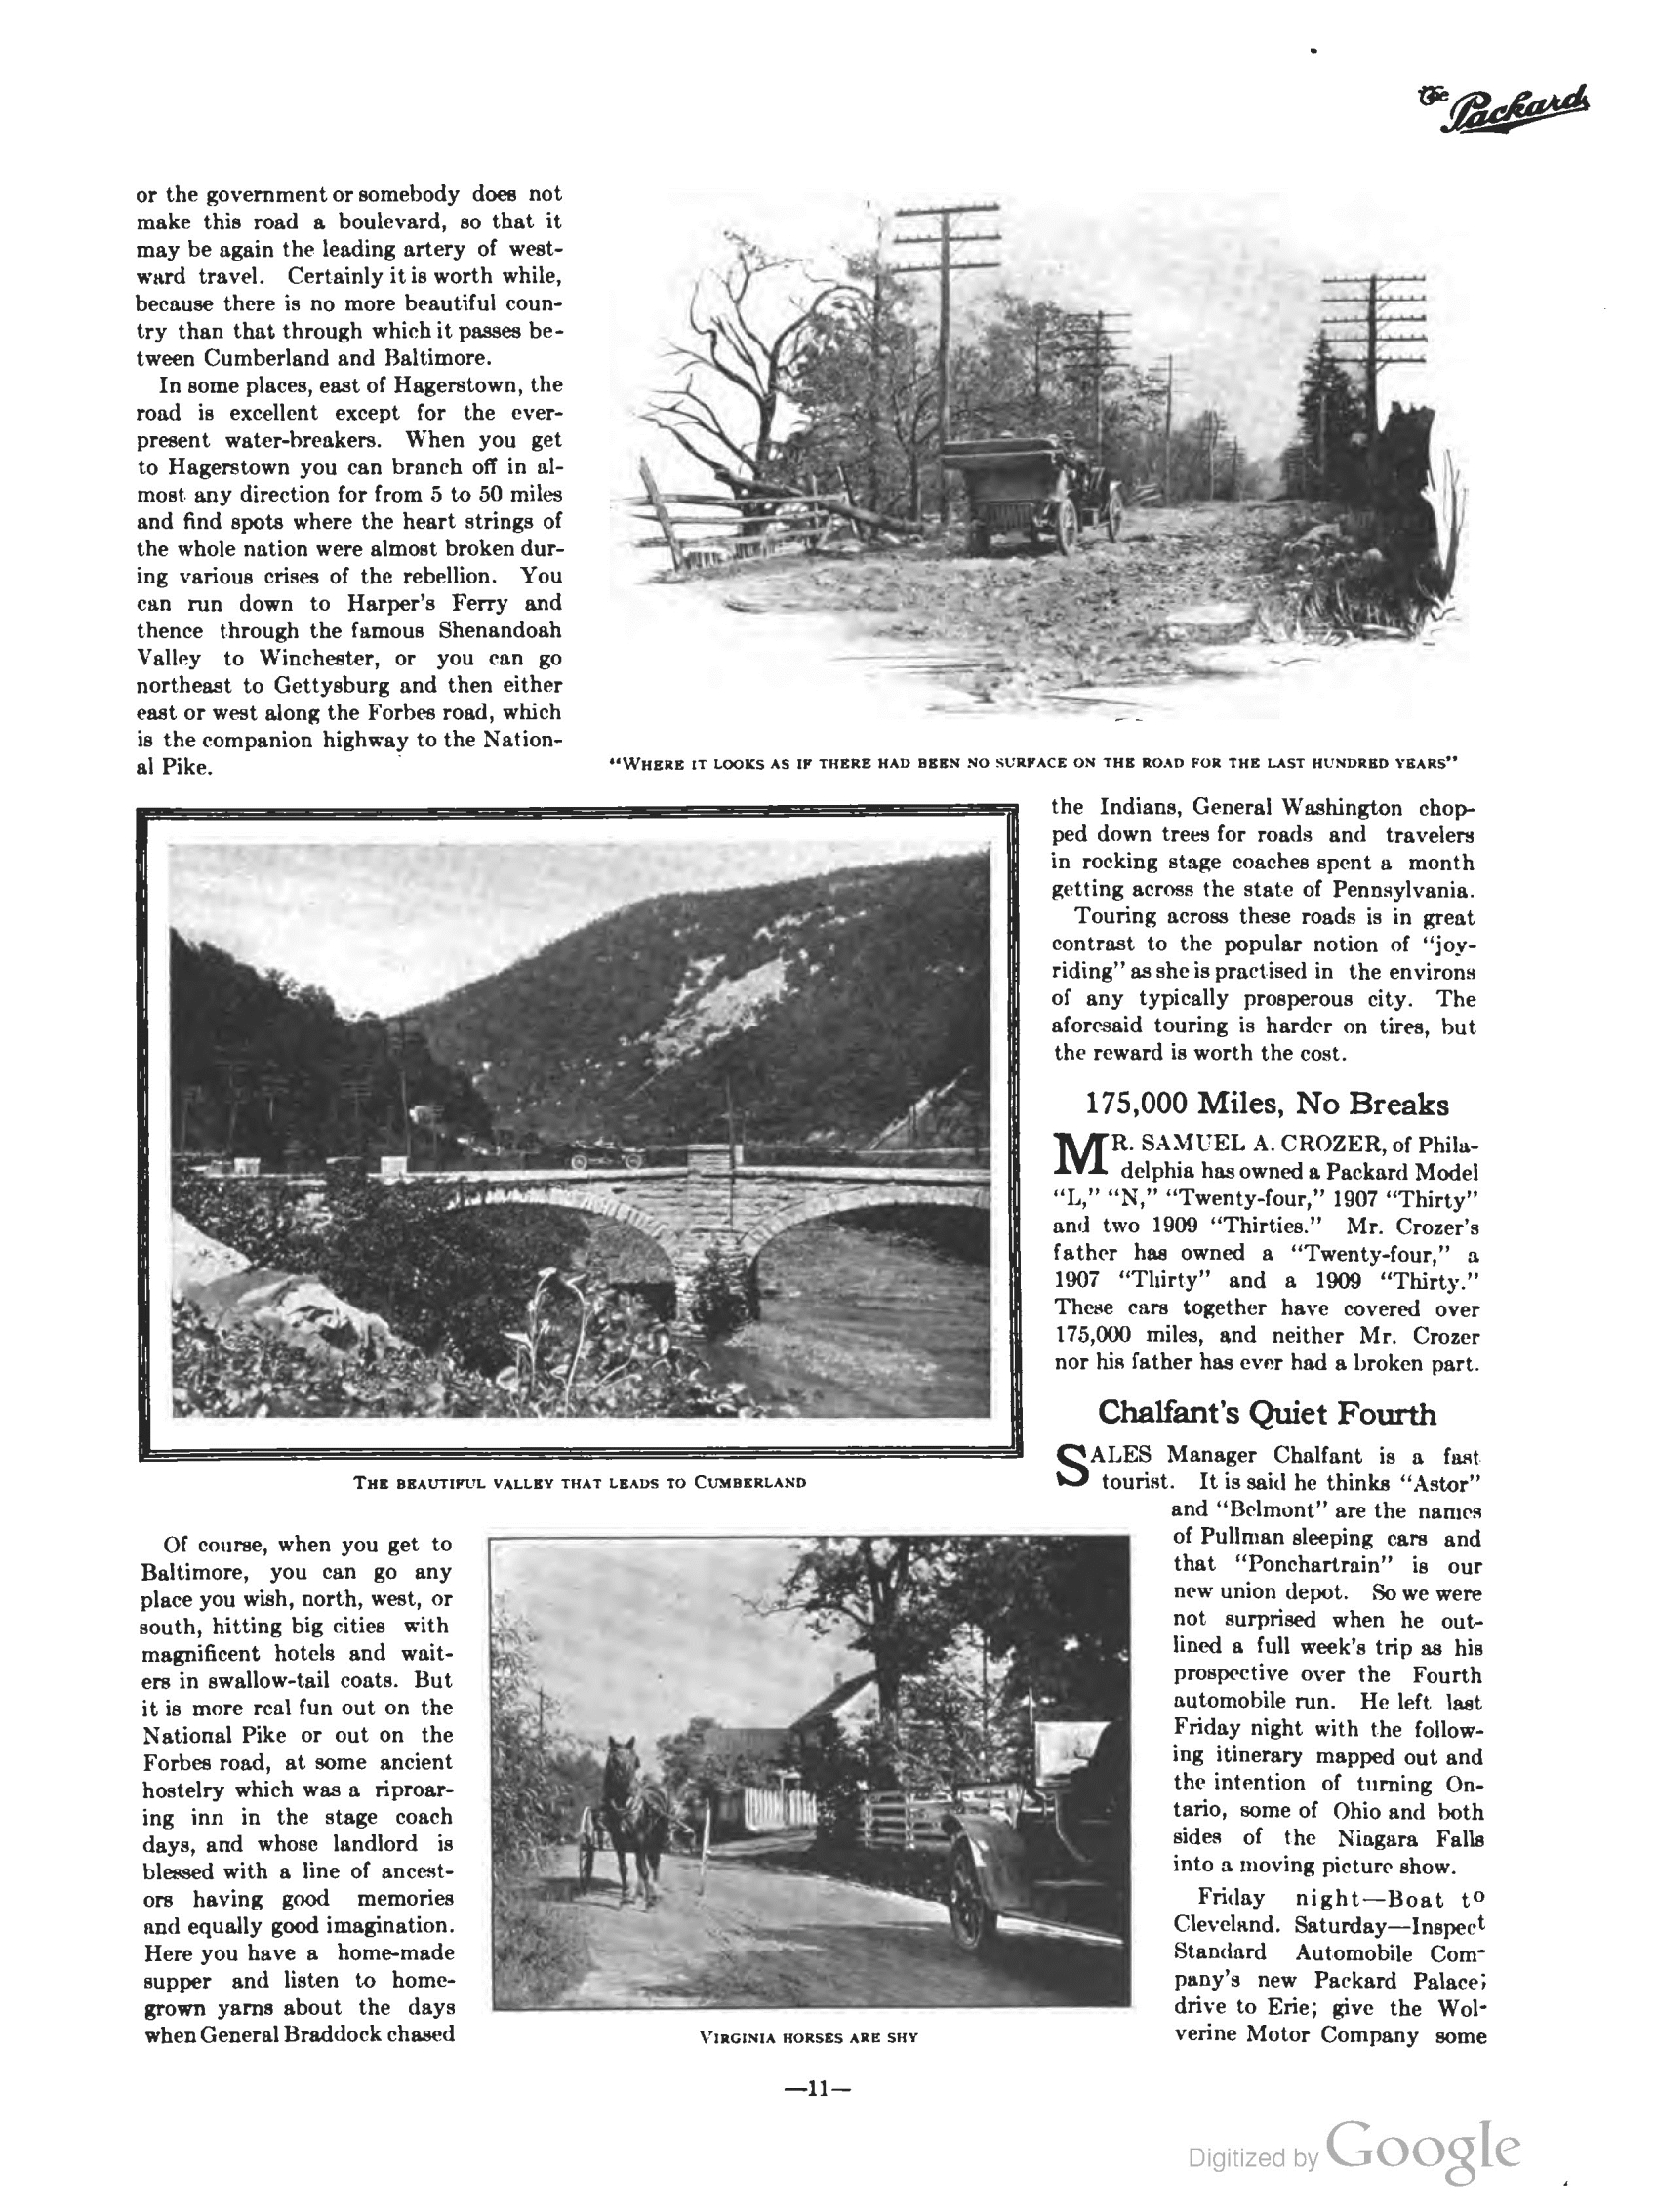 1910_The_Packard_Newsletter-061